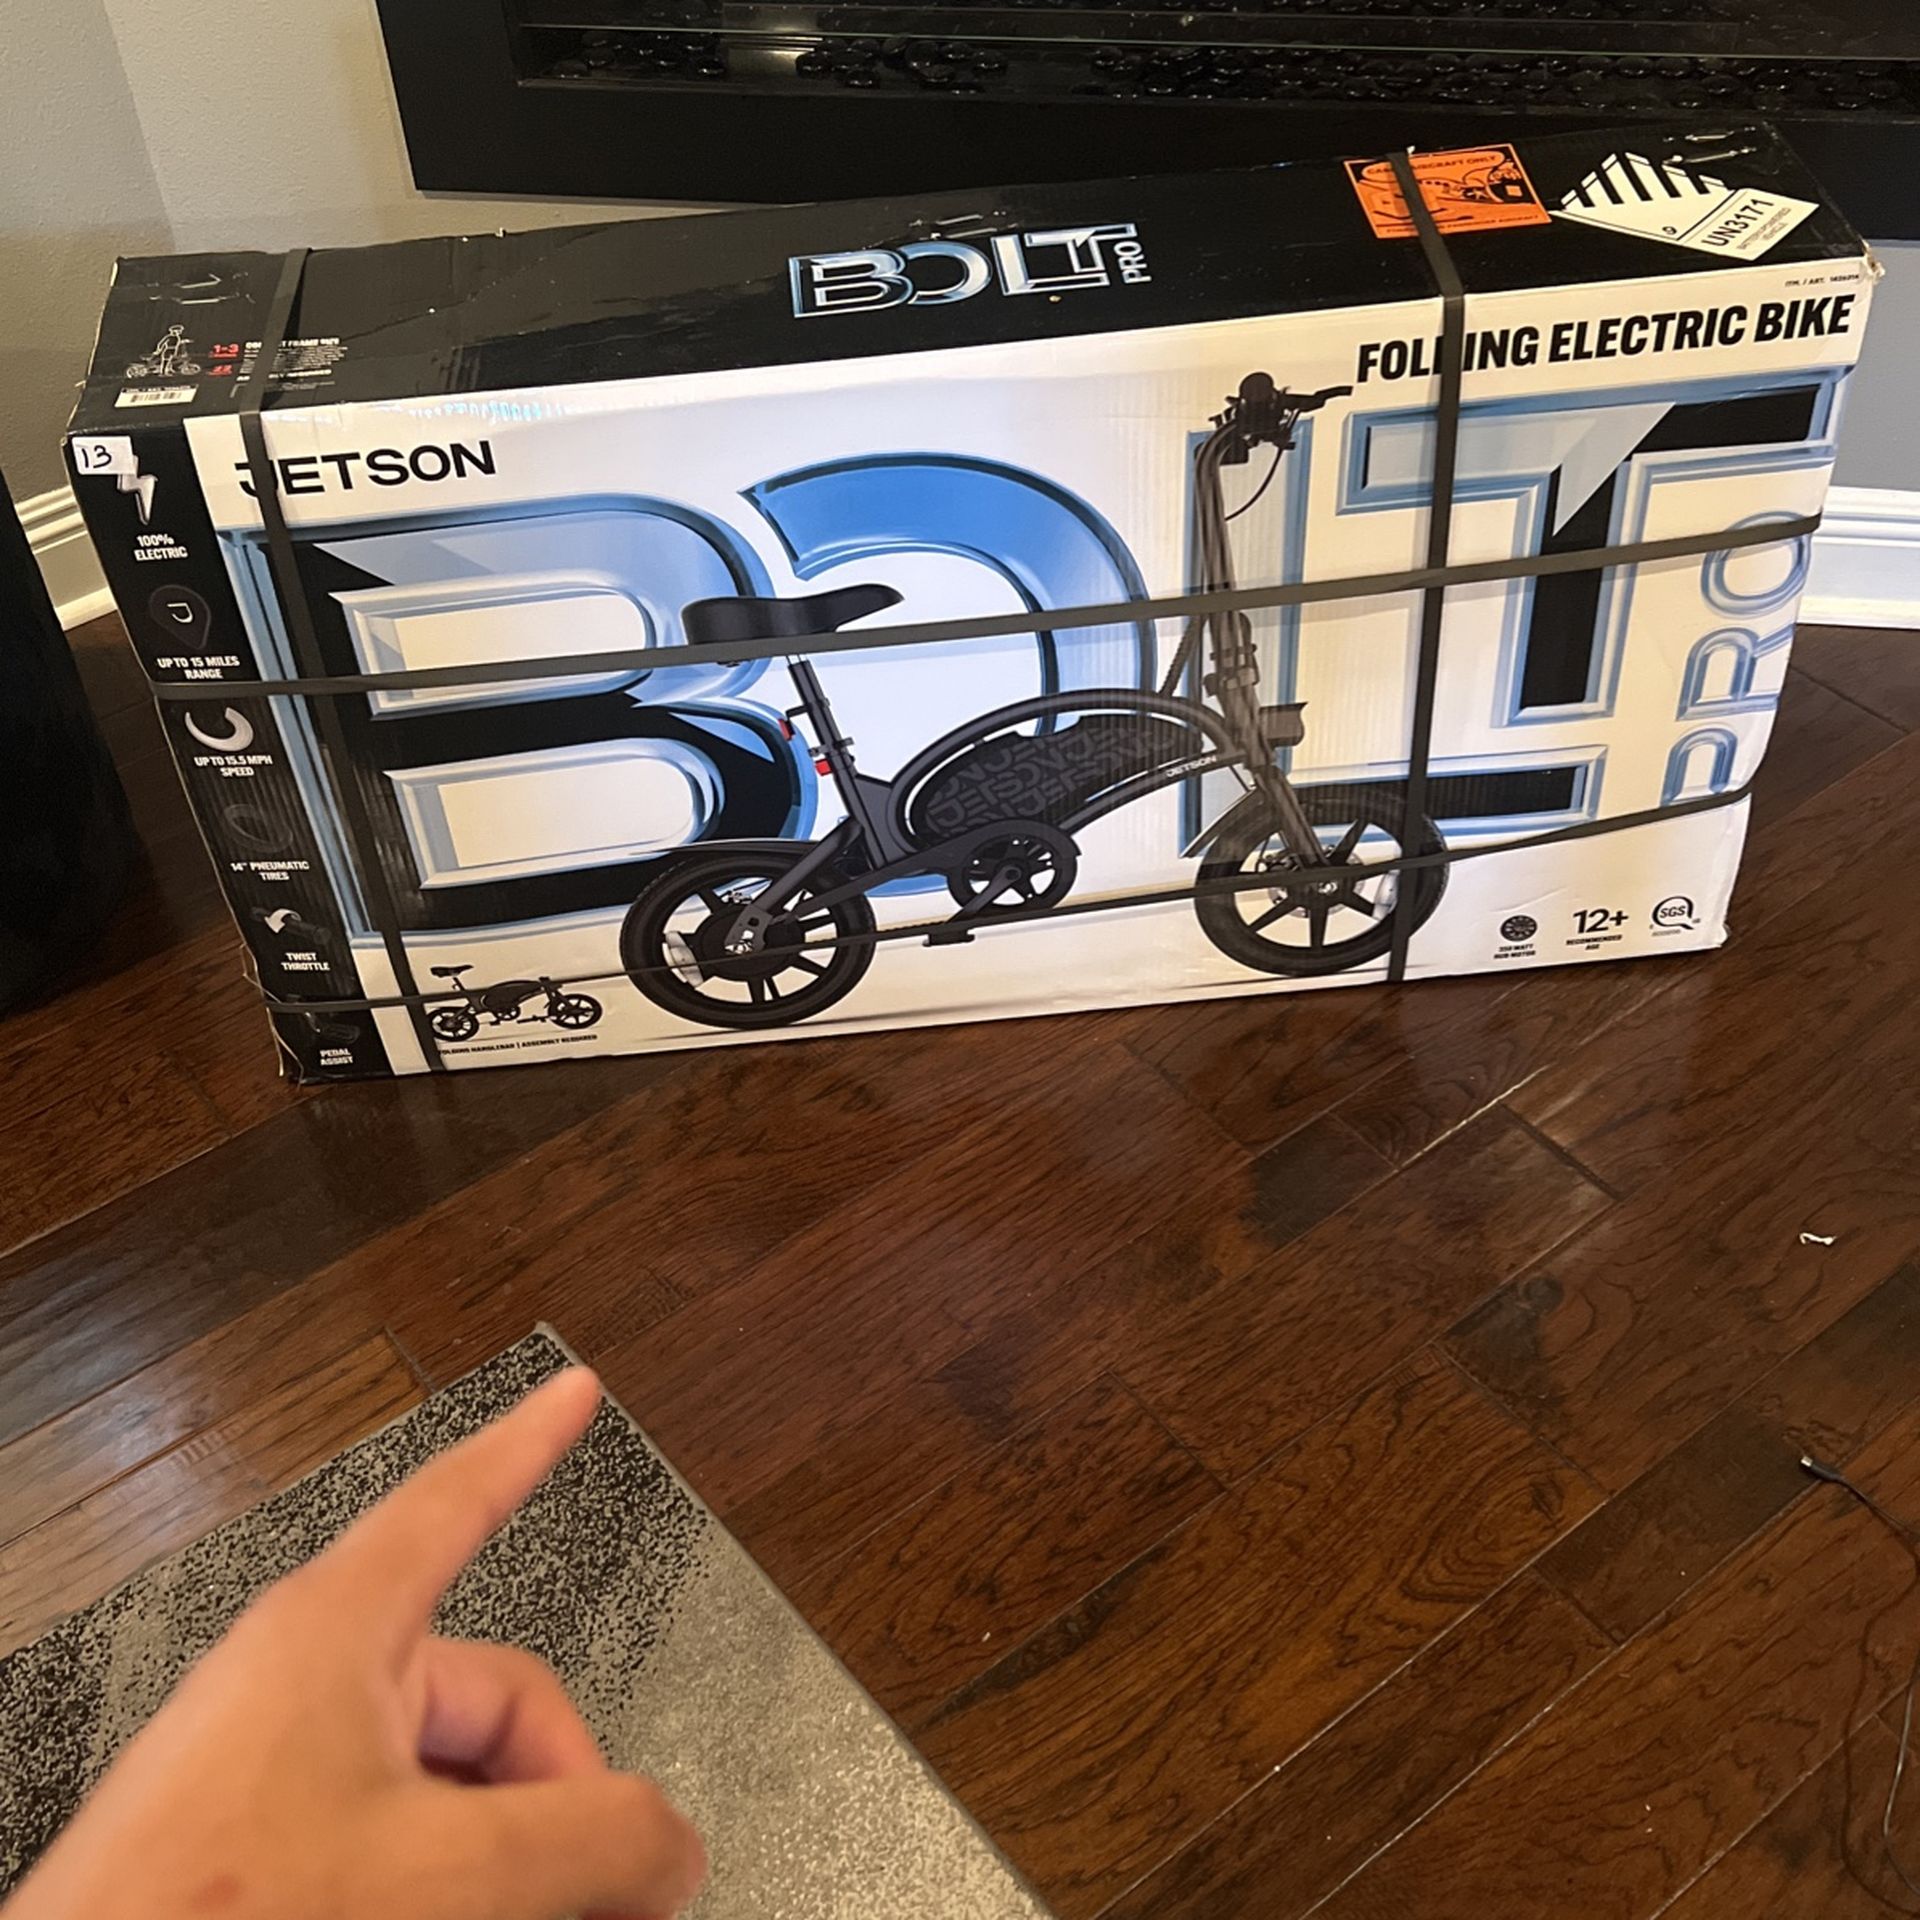 Jetson Bolt Pro Electric Folding Bike 